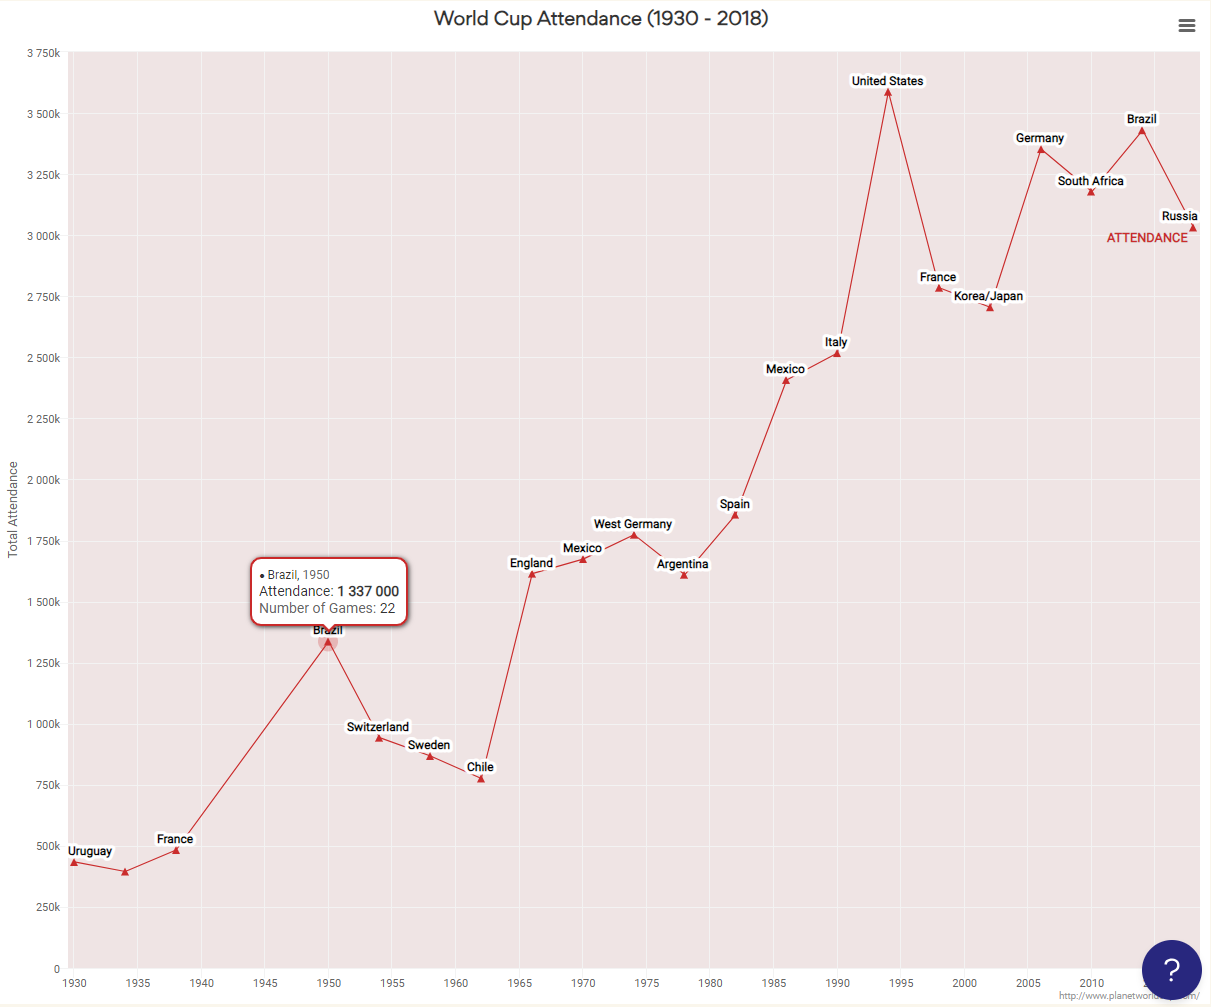 World Cup Attendance (1930 - 2018) - Line chart